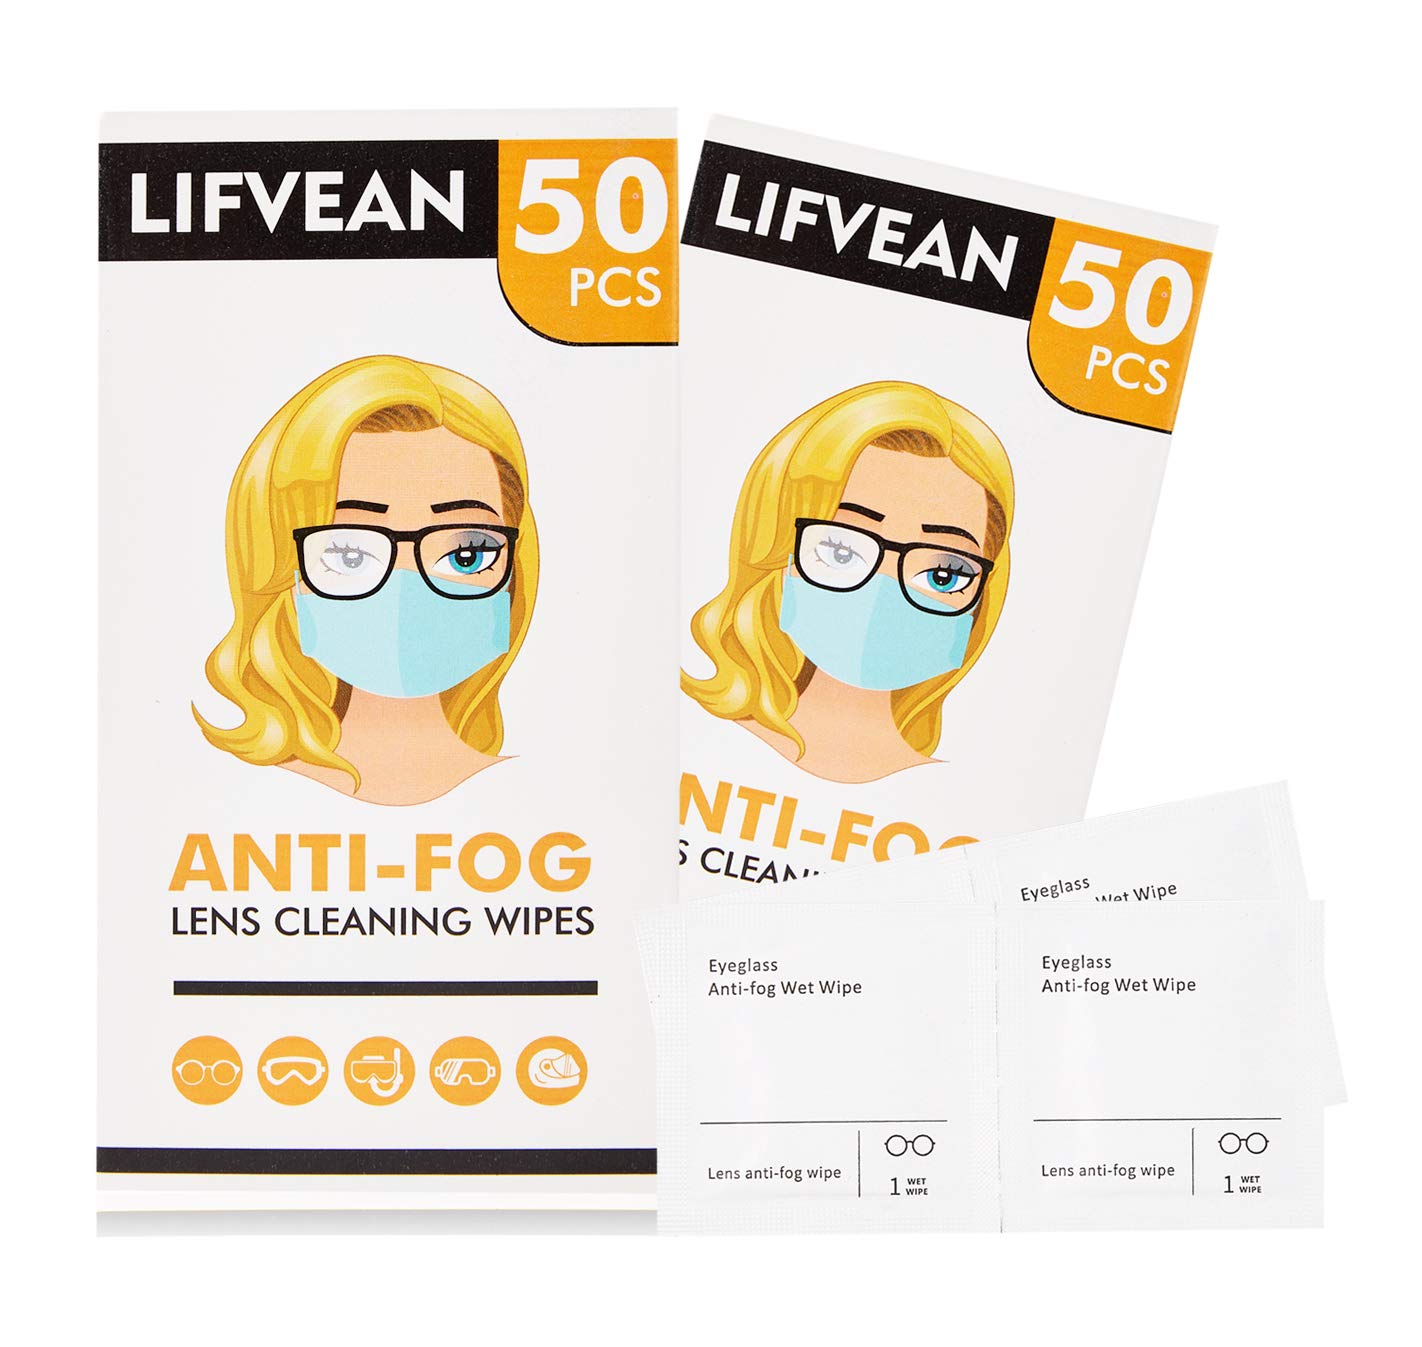 LIFVEAN Anti-Fog Wipes for Glasses Lens Pre-moistened Cleaning